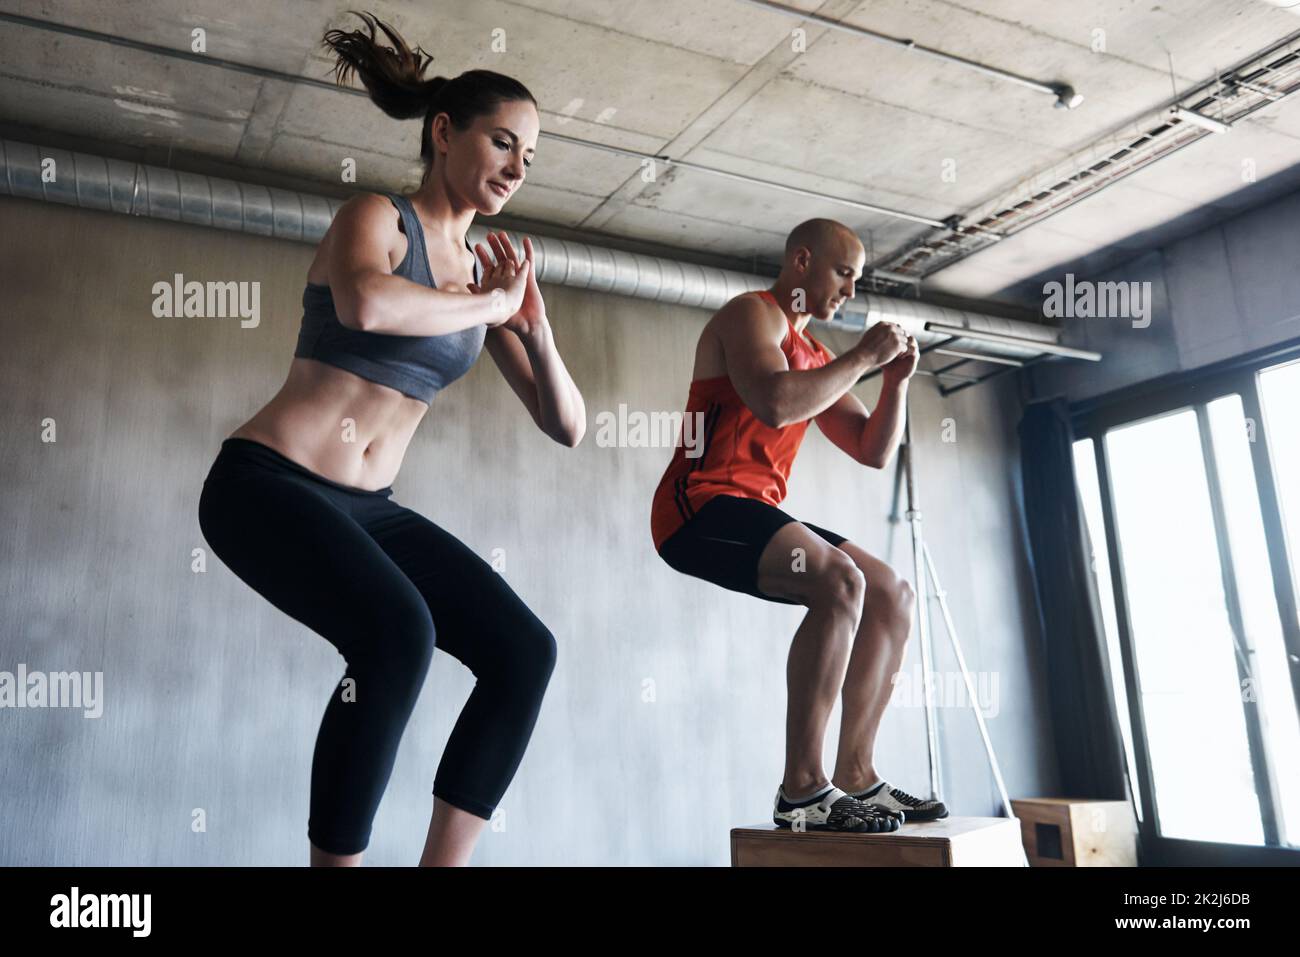 Erreiche den Bestien-Modus. Aufnahme eines Mannes und einer Frau, die gemeinsam im Fitnessstudio trainieren. Stockfoto